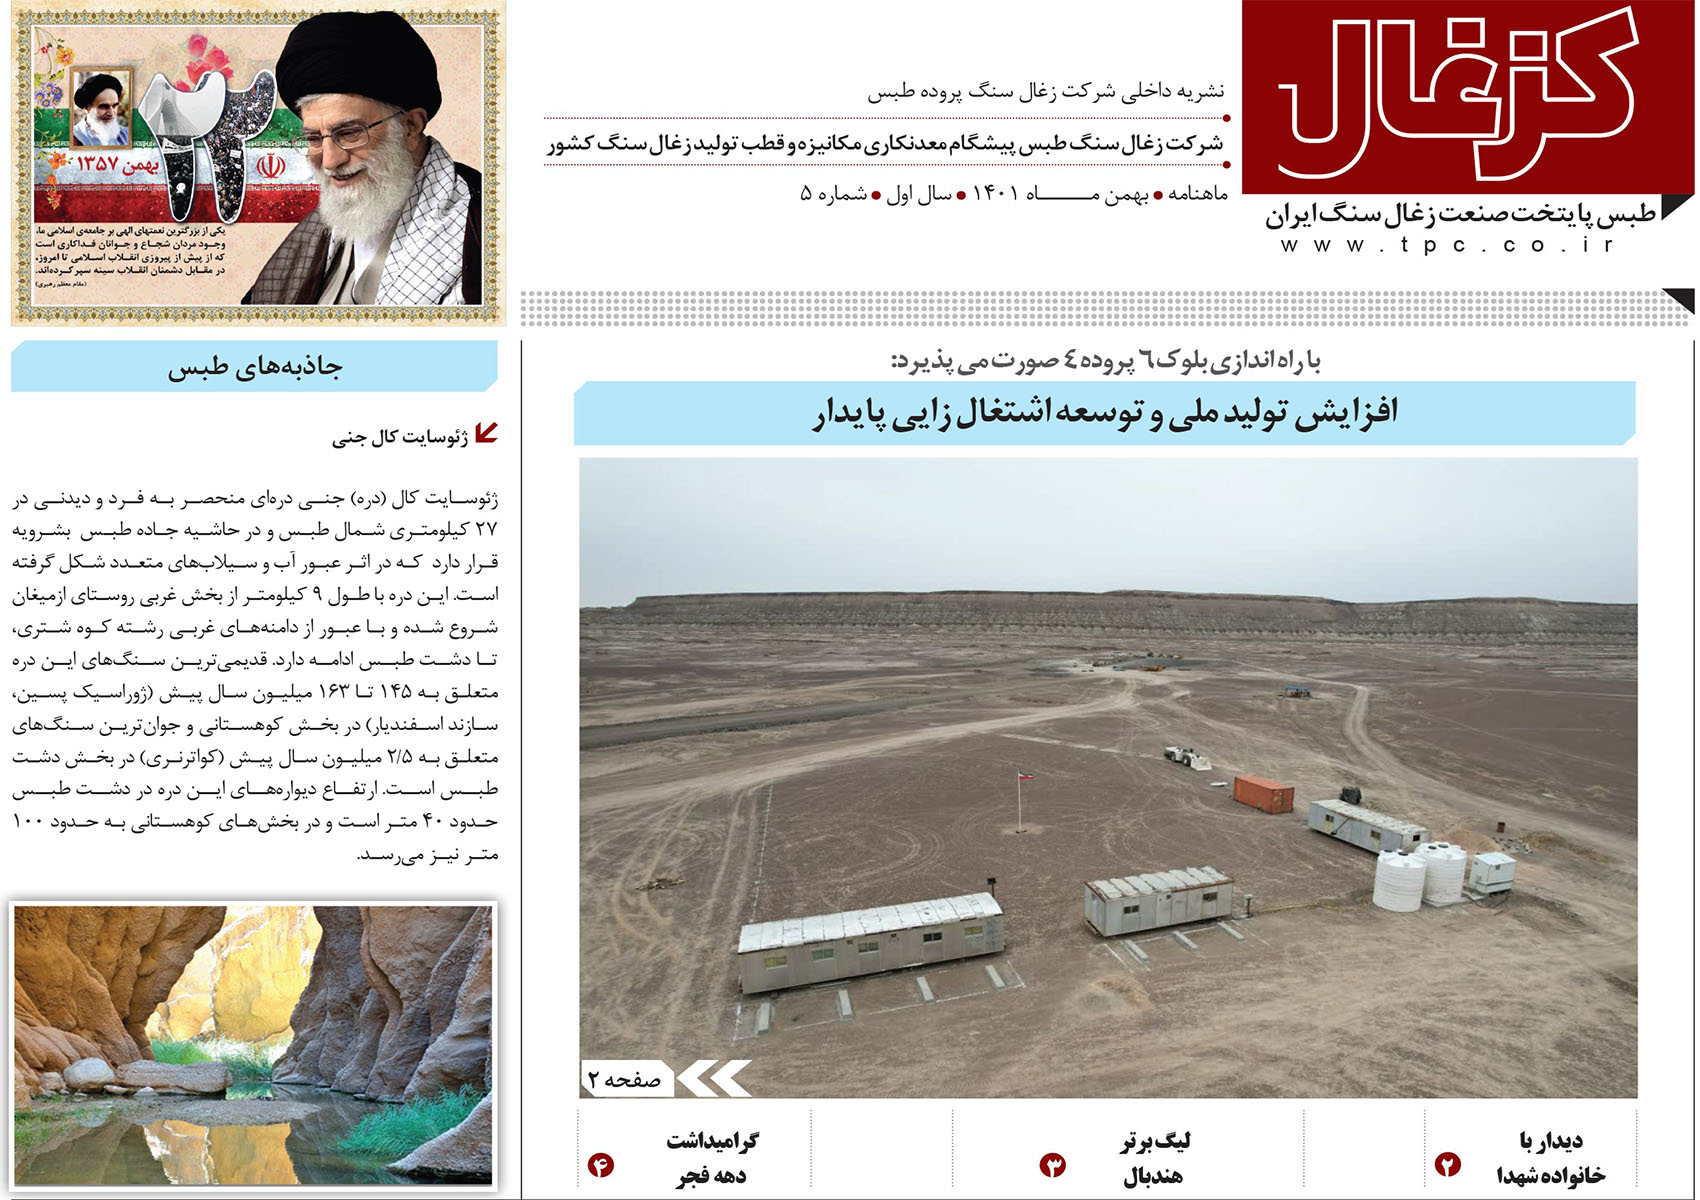 پنجمین نشریه داخلی شرکت زغال سنگ پروده طبس ویژه بهمن ماه1401 منتشر شد.